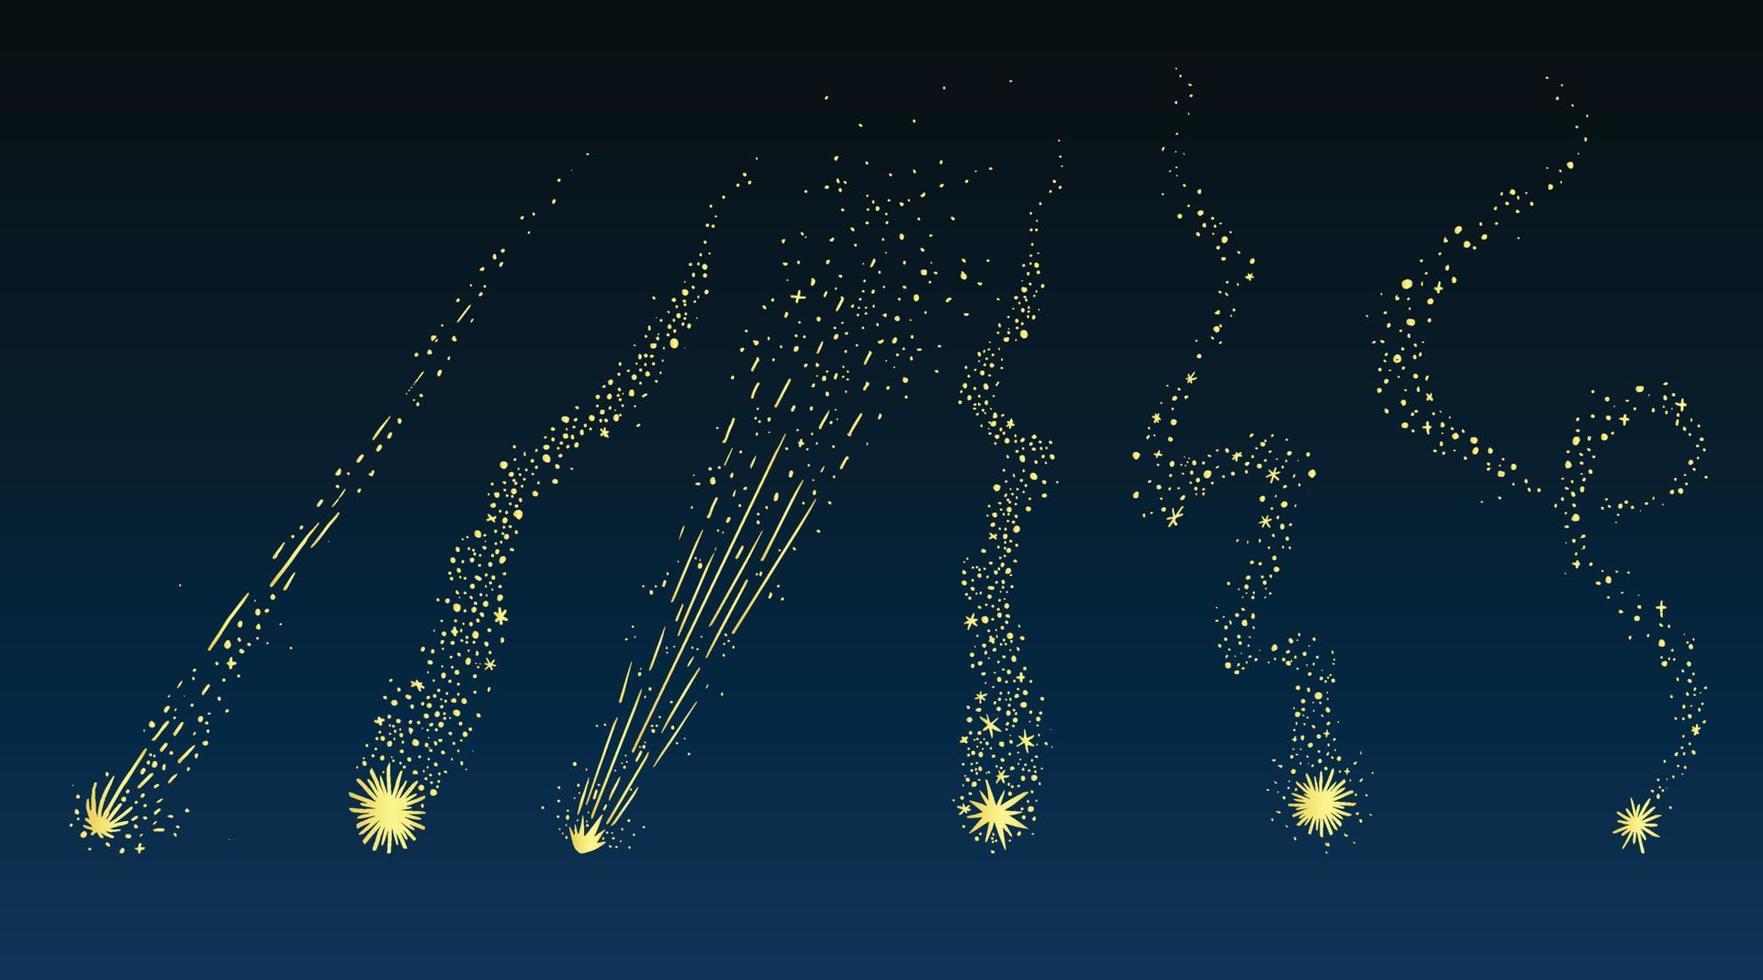 vector illustratie van het schieten sterren tegen de nacht lucht achtergrond.